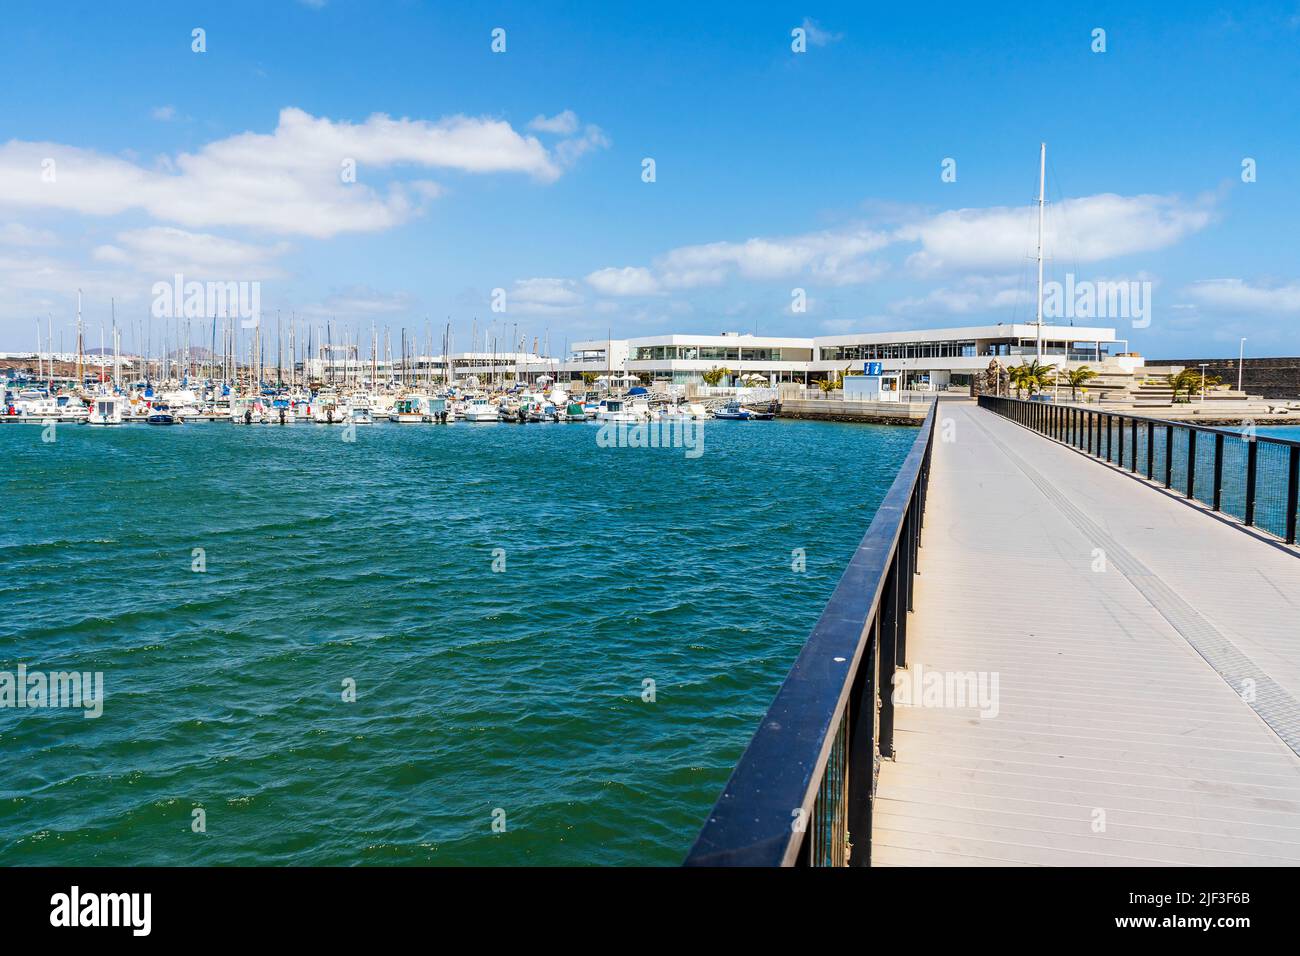 Puente peatonal, barcos y arquitectura moderna en el puerto deportivo de Arrecife, capital de Lanzarote, Islas Canarias, España Foto de stock